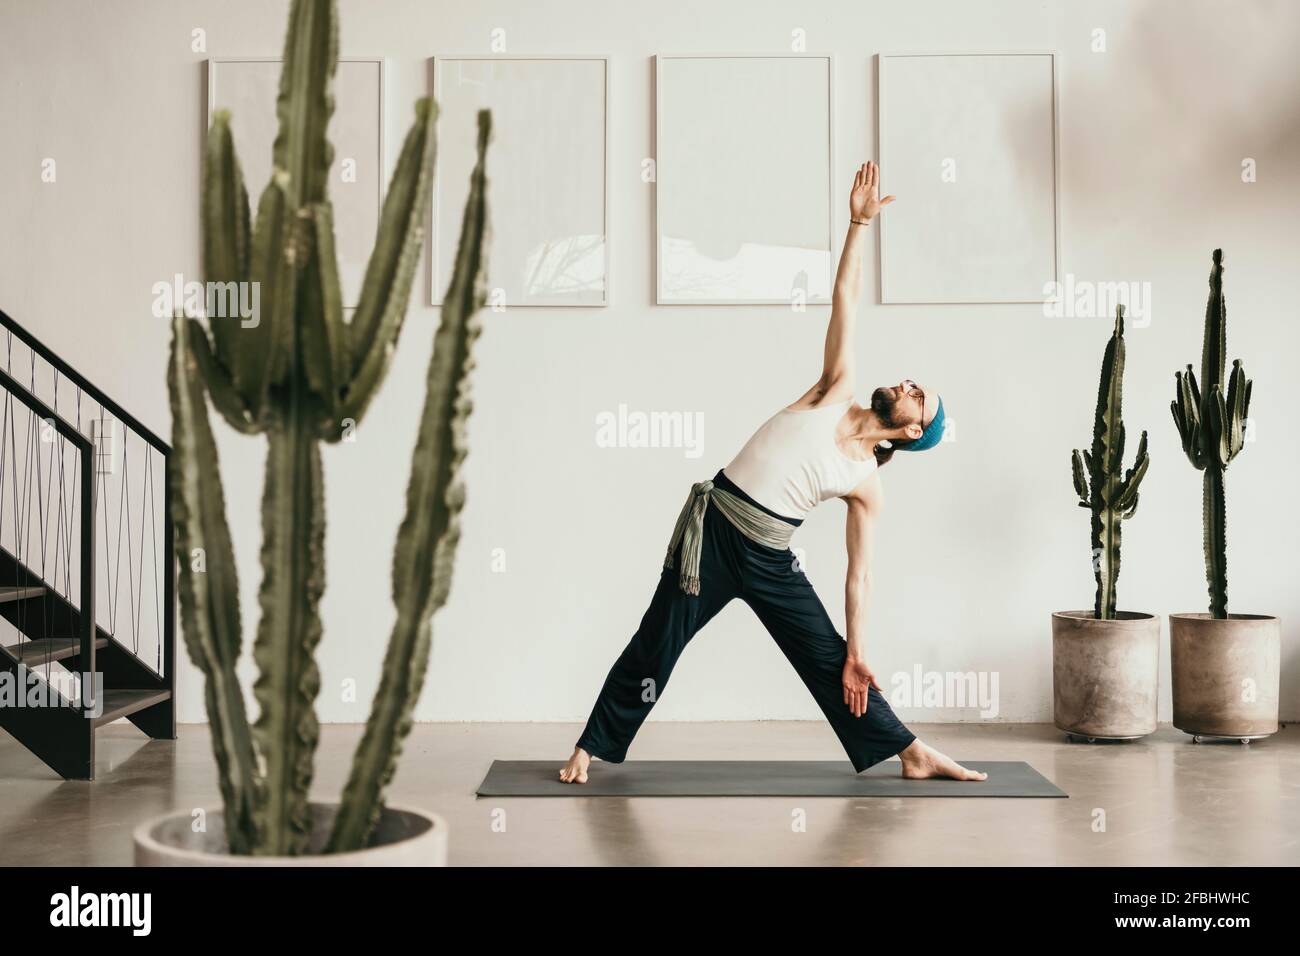 Männlicher Fitnesstrainer, der Yoga auf einer Trainingsmatte praktiziert Stockfoto